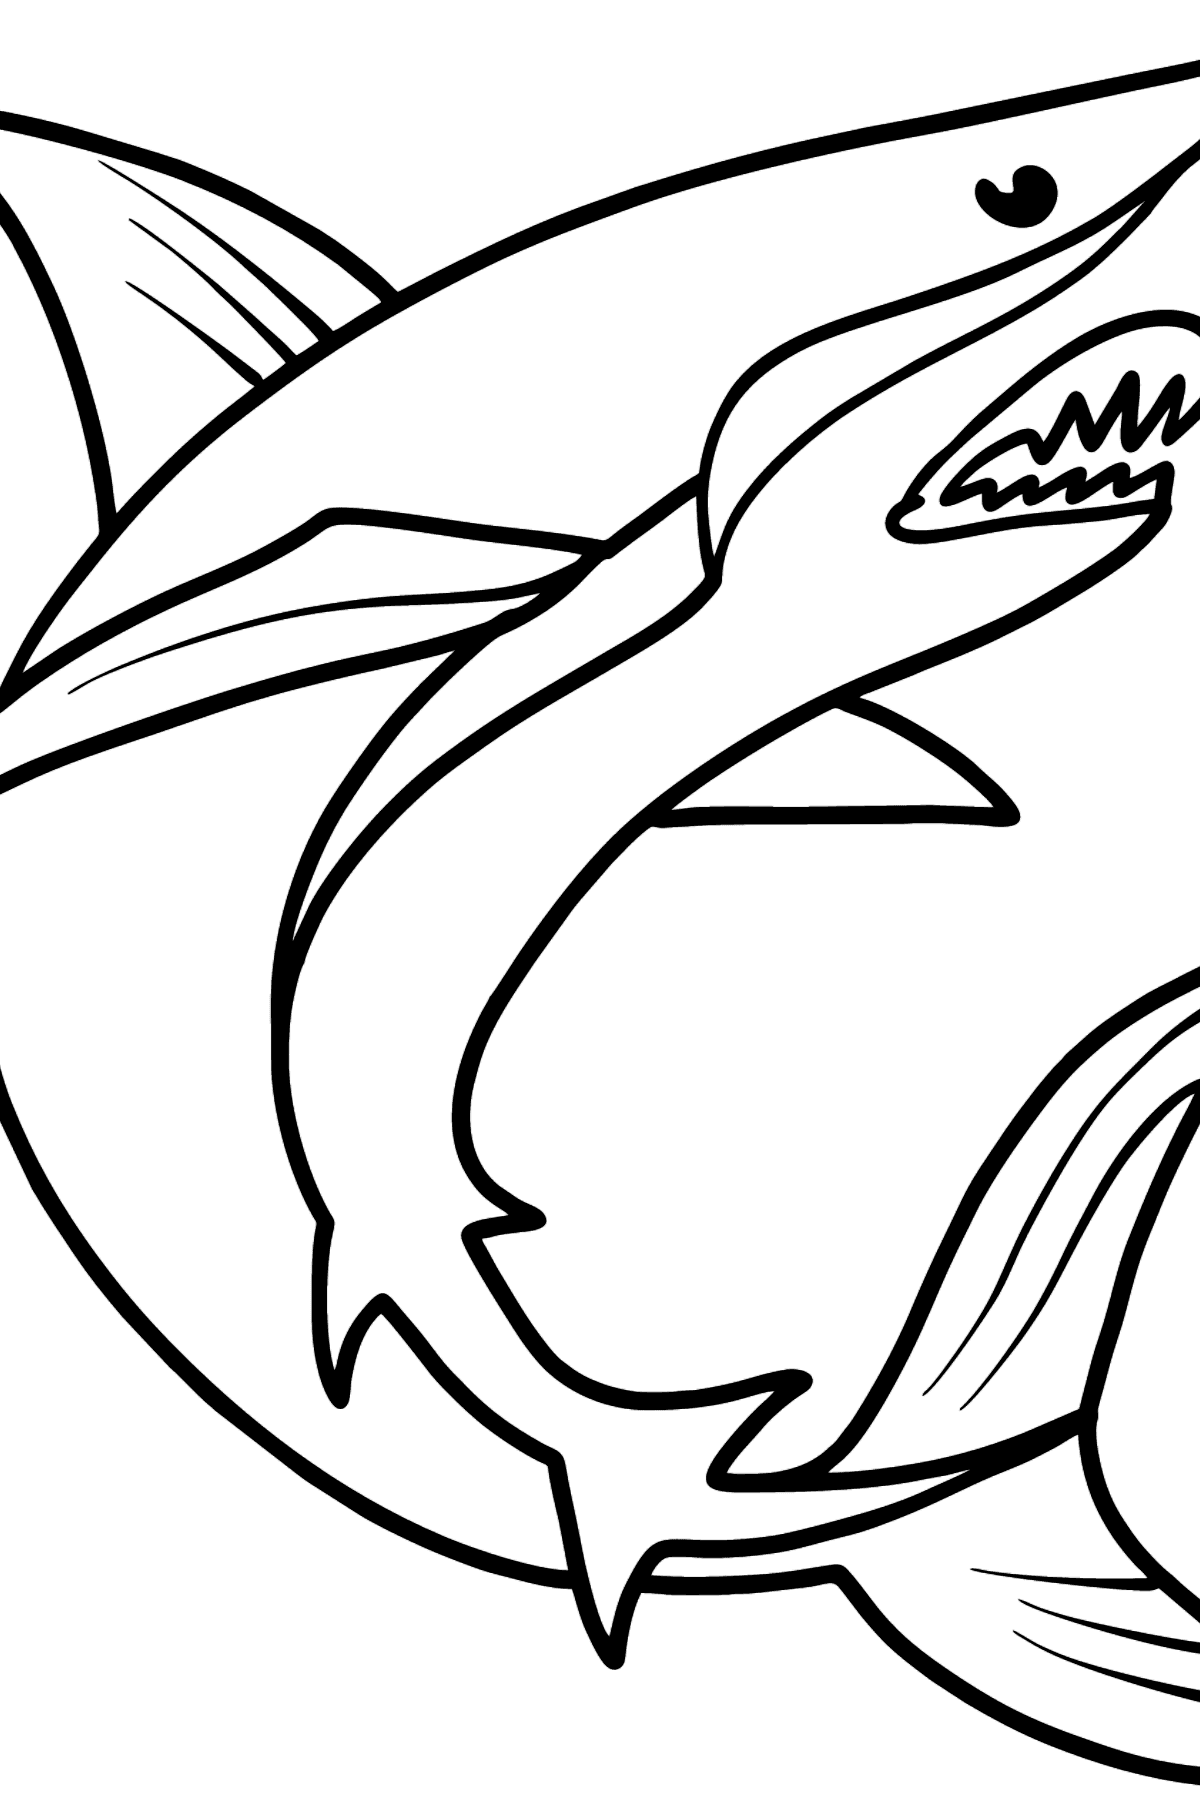 Dibujo de tiburon para colorear - Dibujos para Colorear para Niños